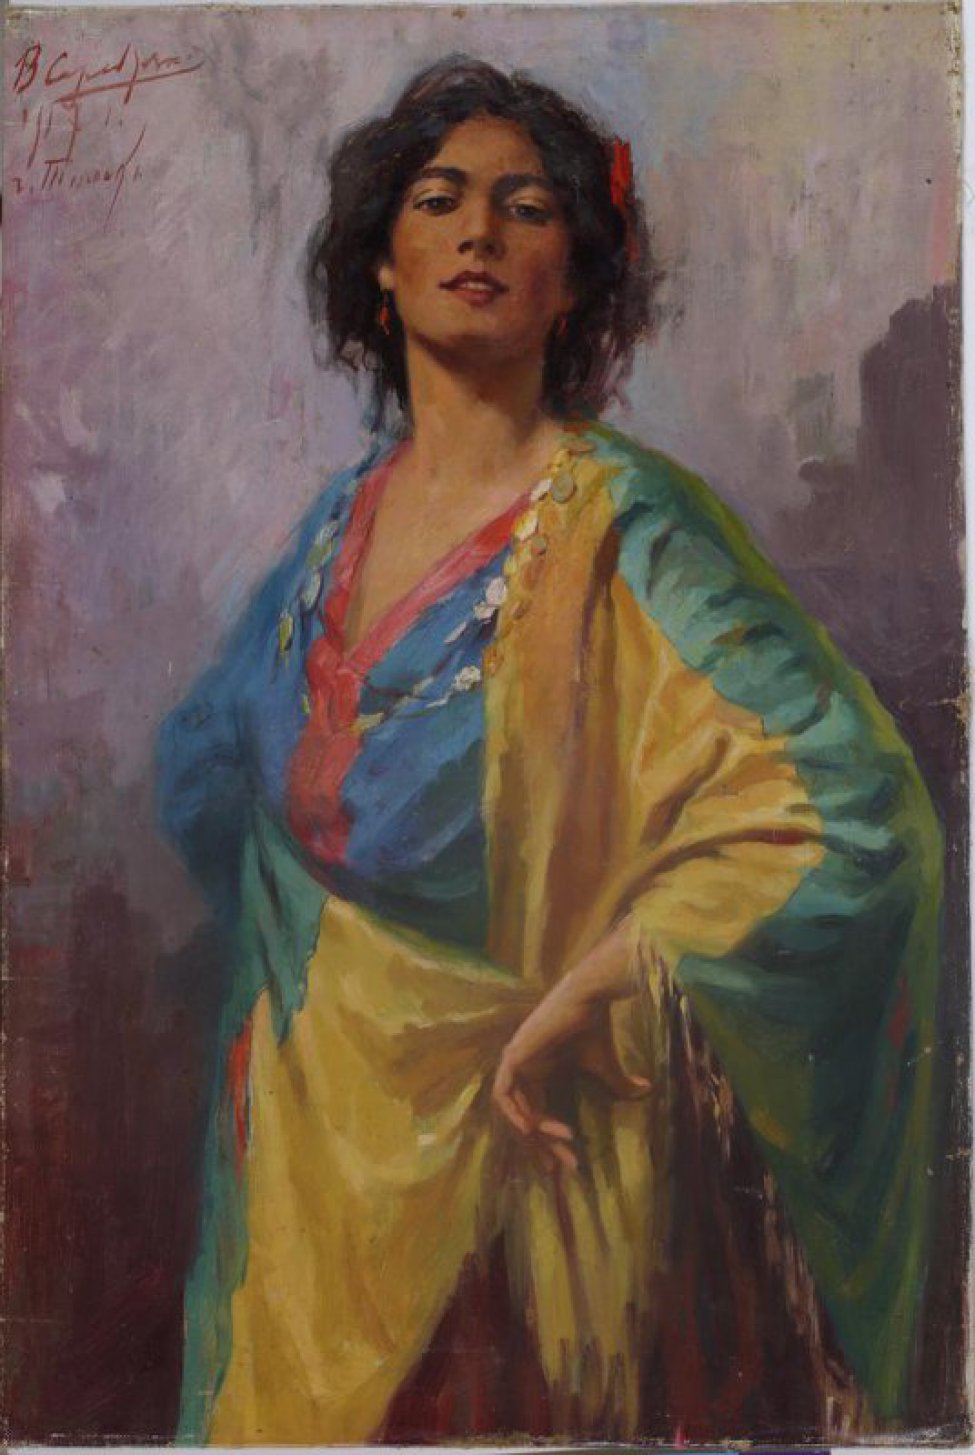 Дано поколенное изображение стоящей "подбоченясь" молодой темноволосой женщины в яркой бирюзово-желтой одежде с красной  оторочкой, с манистами на шее.